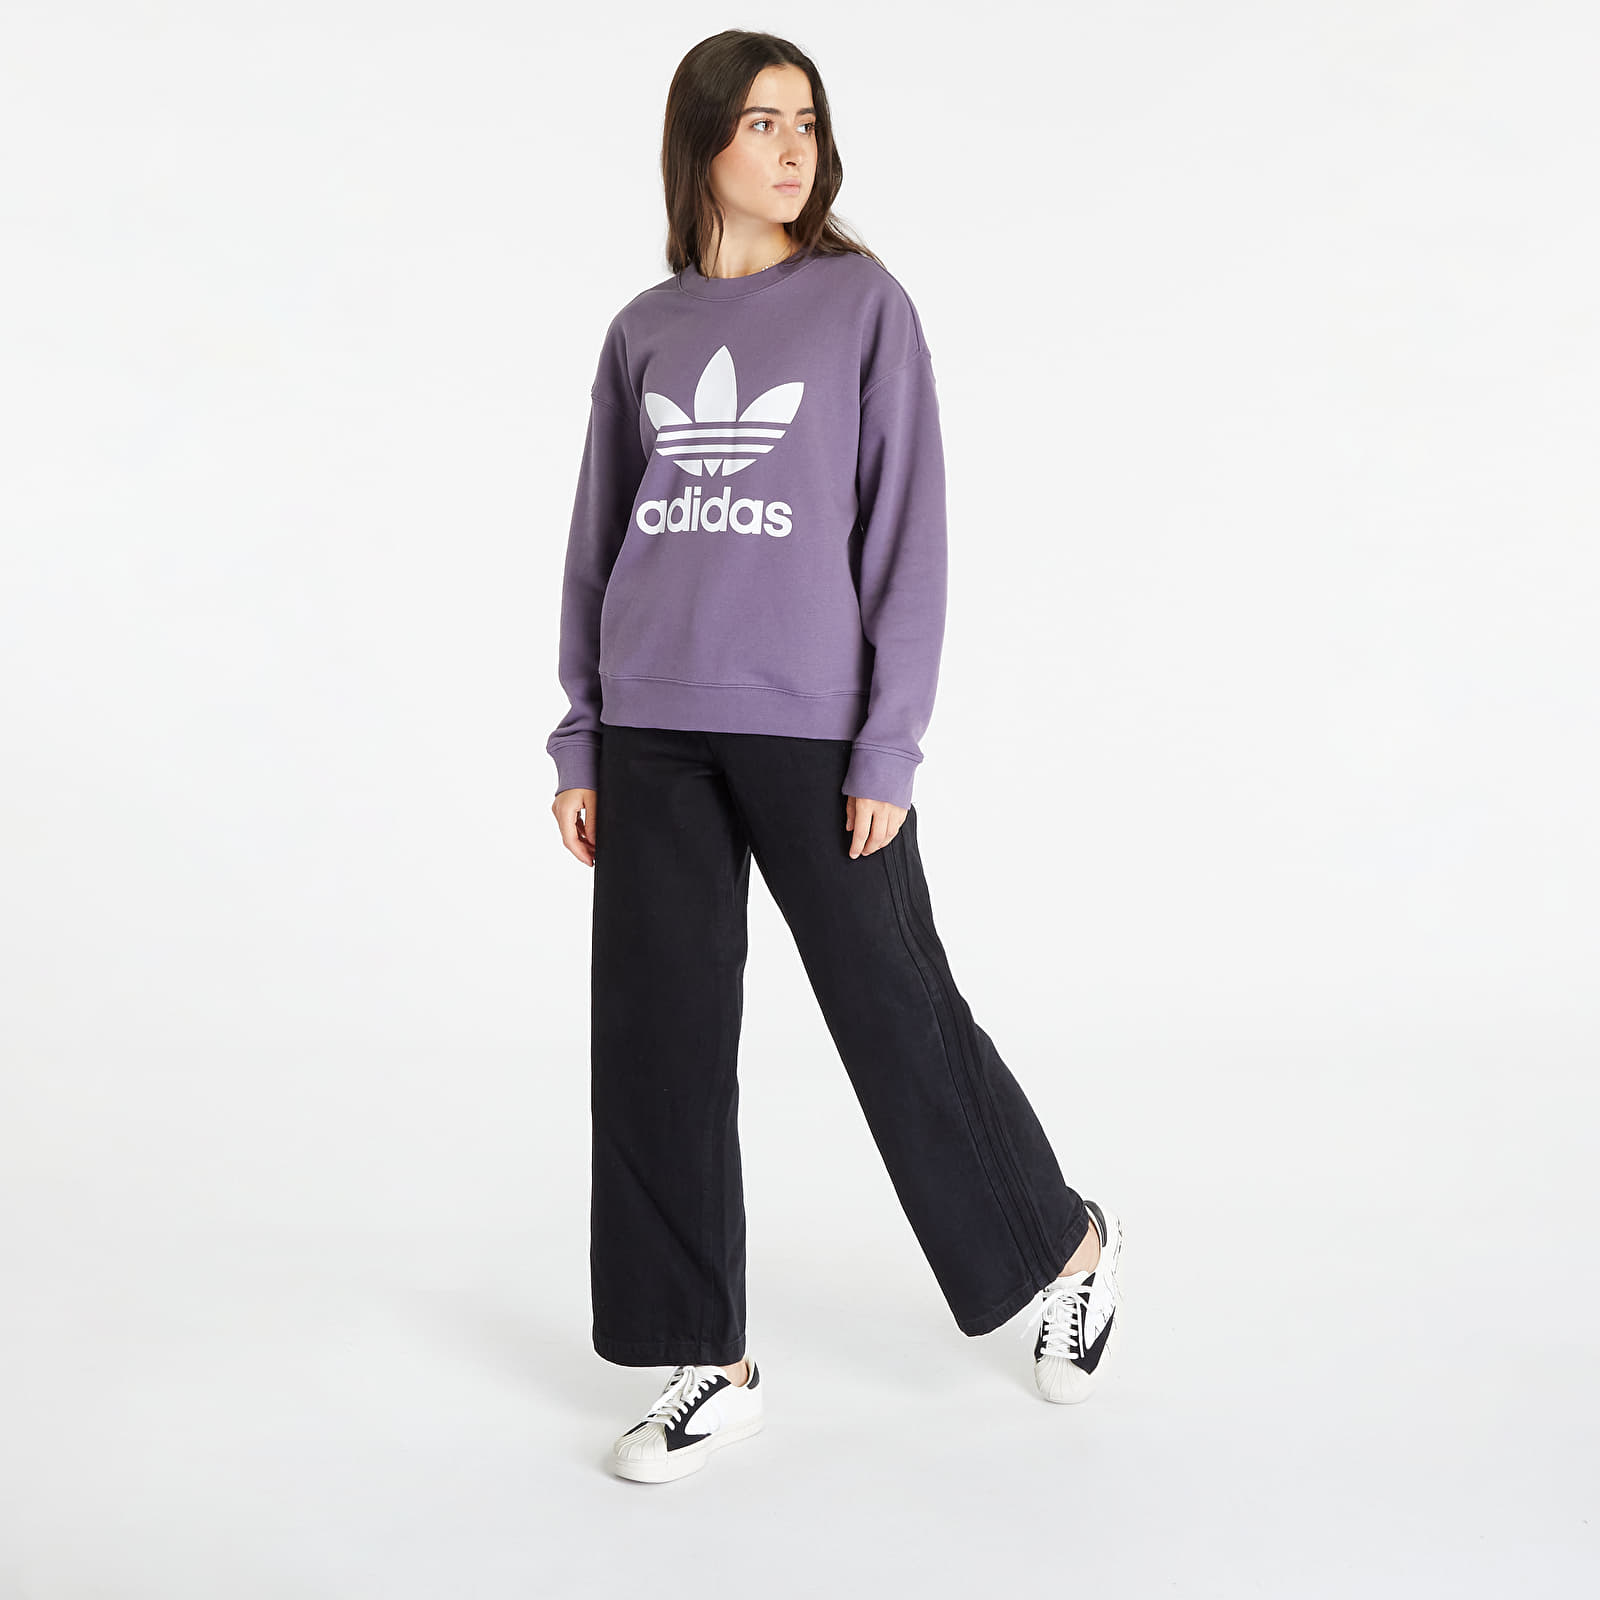 adidas Originals cotton sweatshirt Trefoil Crew Sweatshirt women's